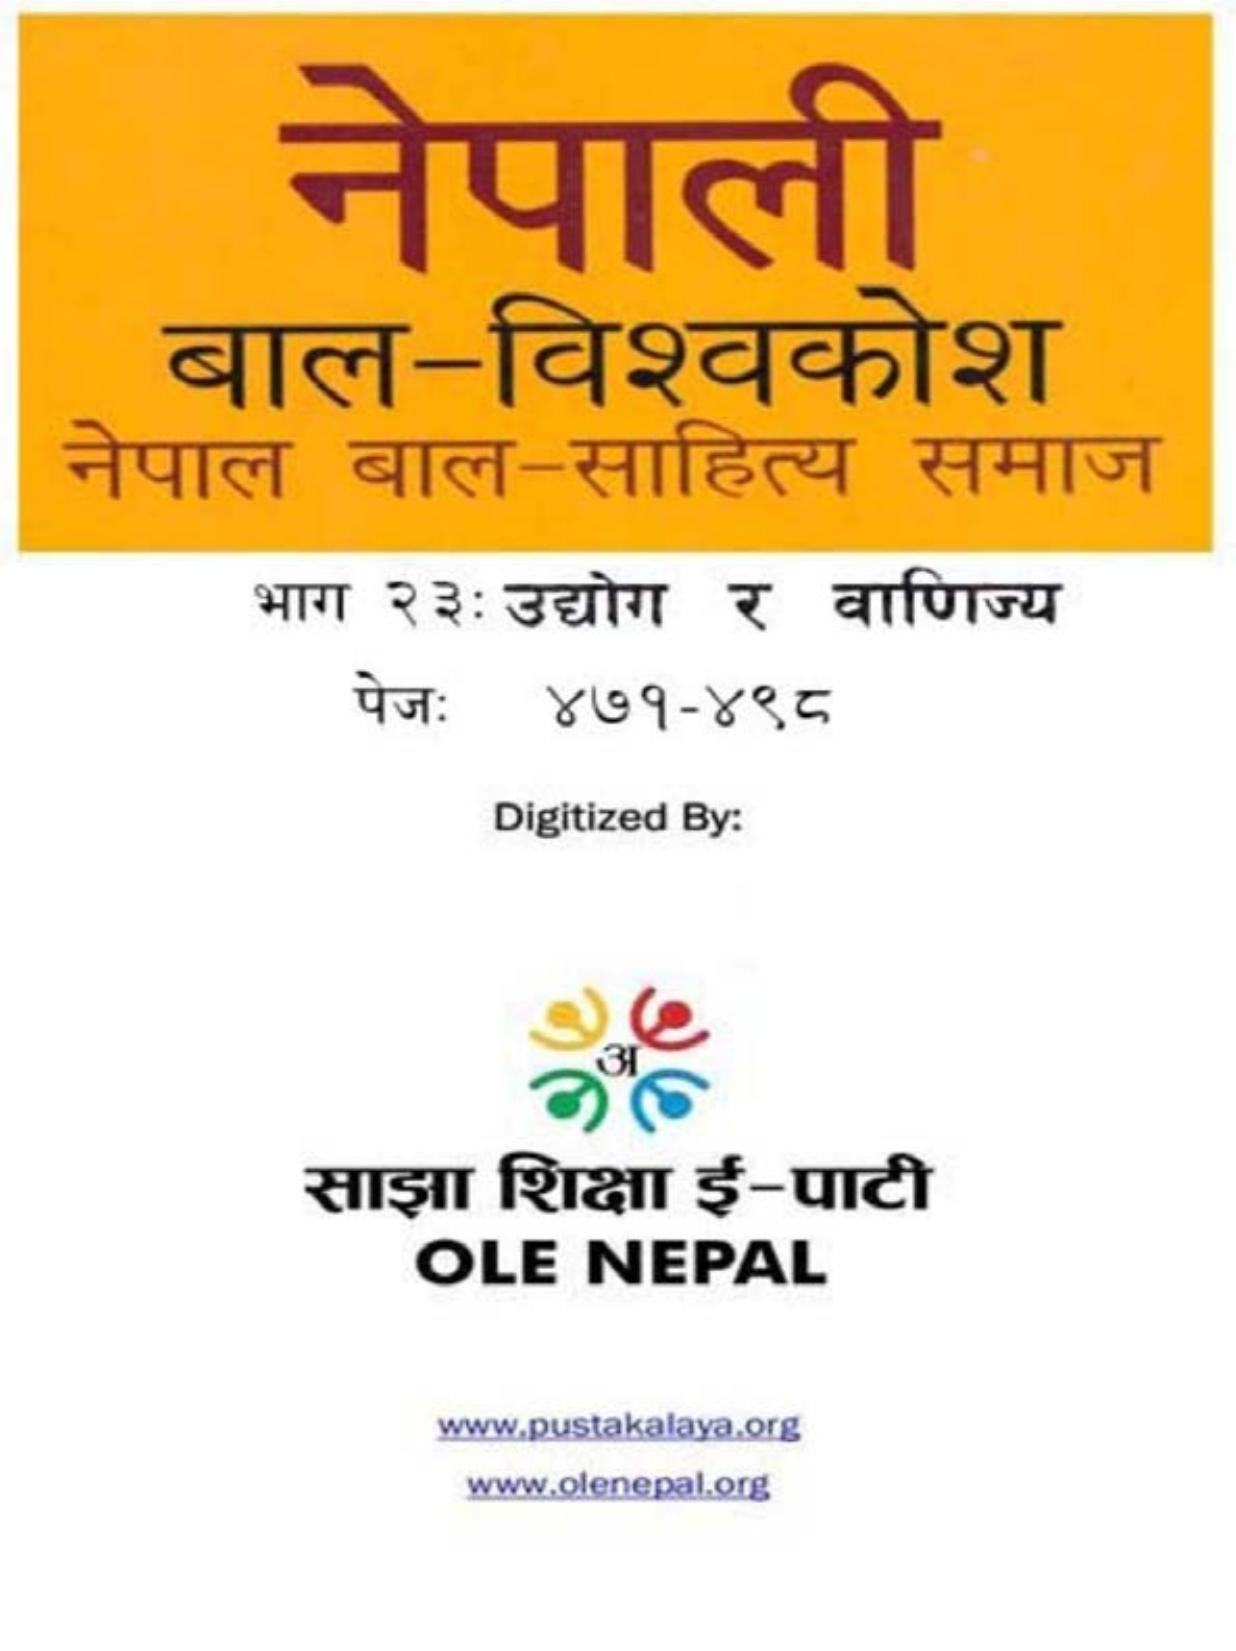 नेपाली बाल-विश्वकोश २३: उद्योग र वाणिज्य